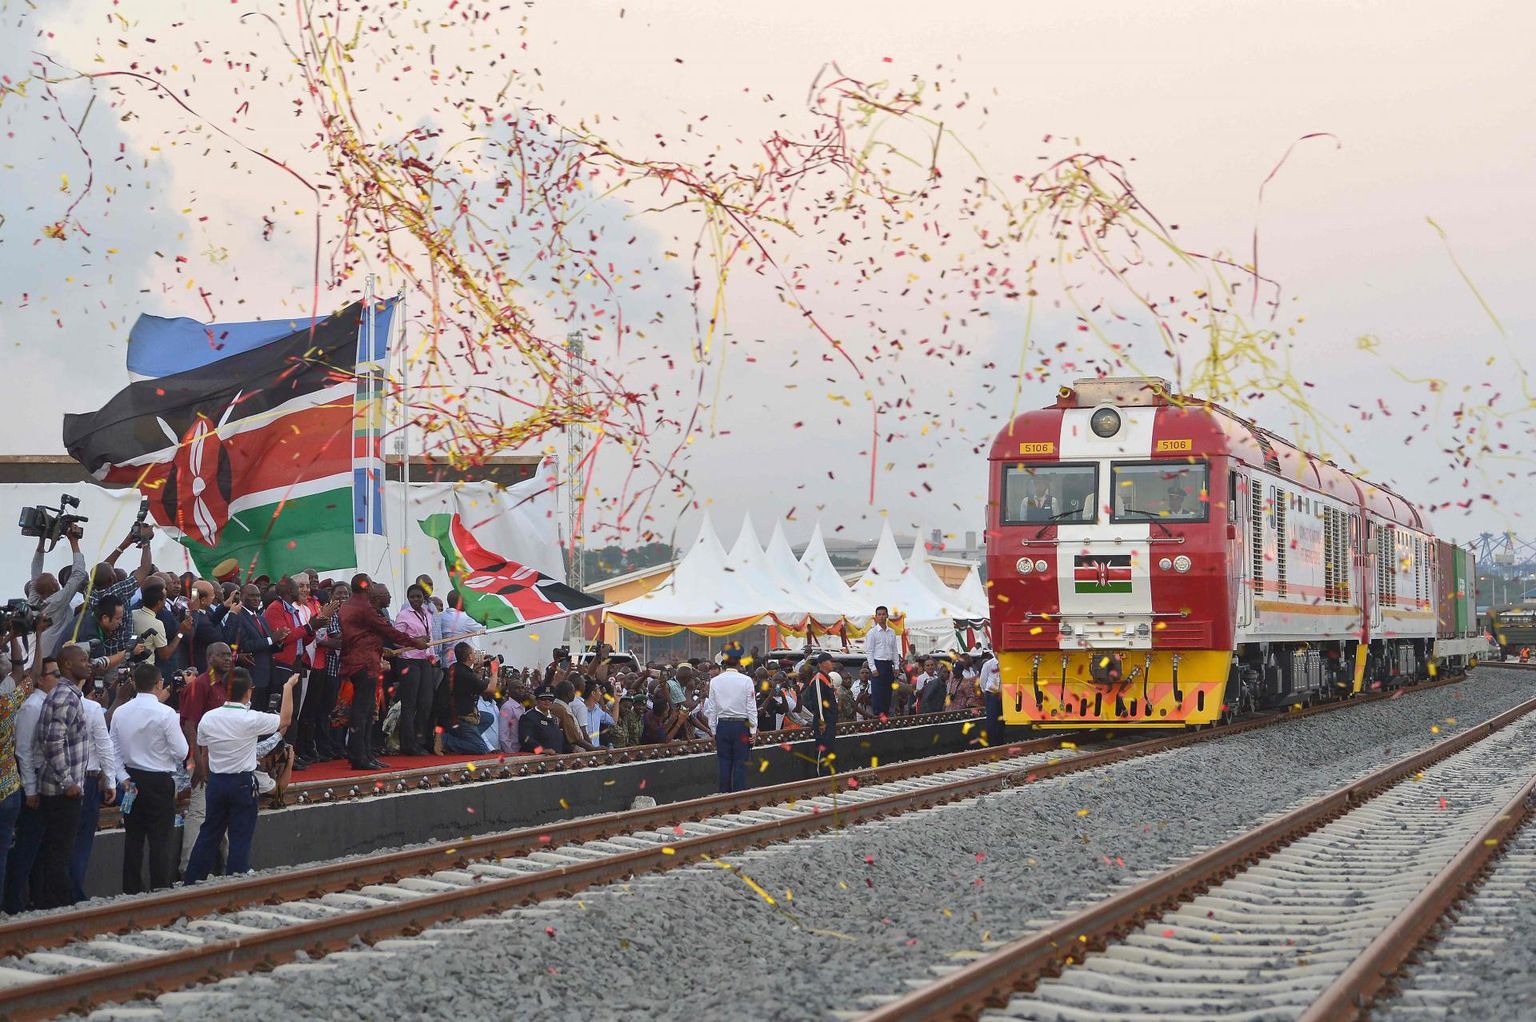 2017. aasta keskel saatis Keenia president Uhuru Kenyatta esimese kaubarongi Mombasa sadamast teele pealinna Nairobi poole. Raudtee ehitati Hiina toel ning läks maksma ligi kolm miljardit eurot. 